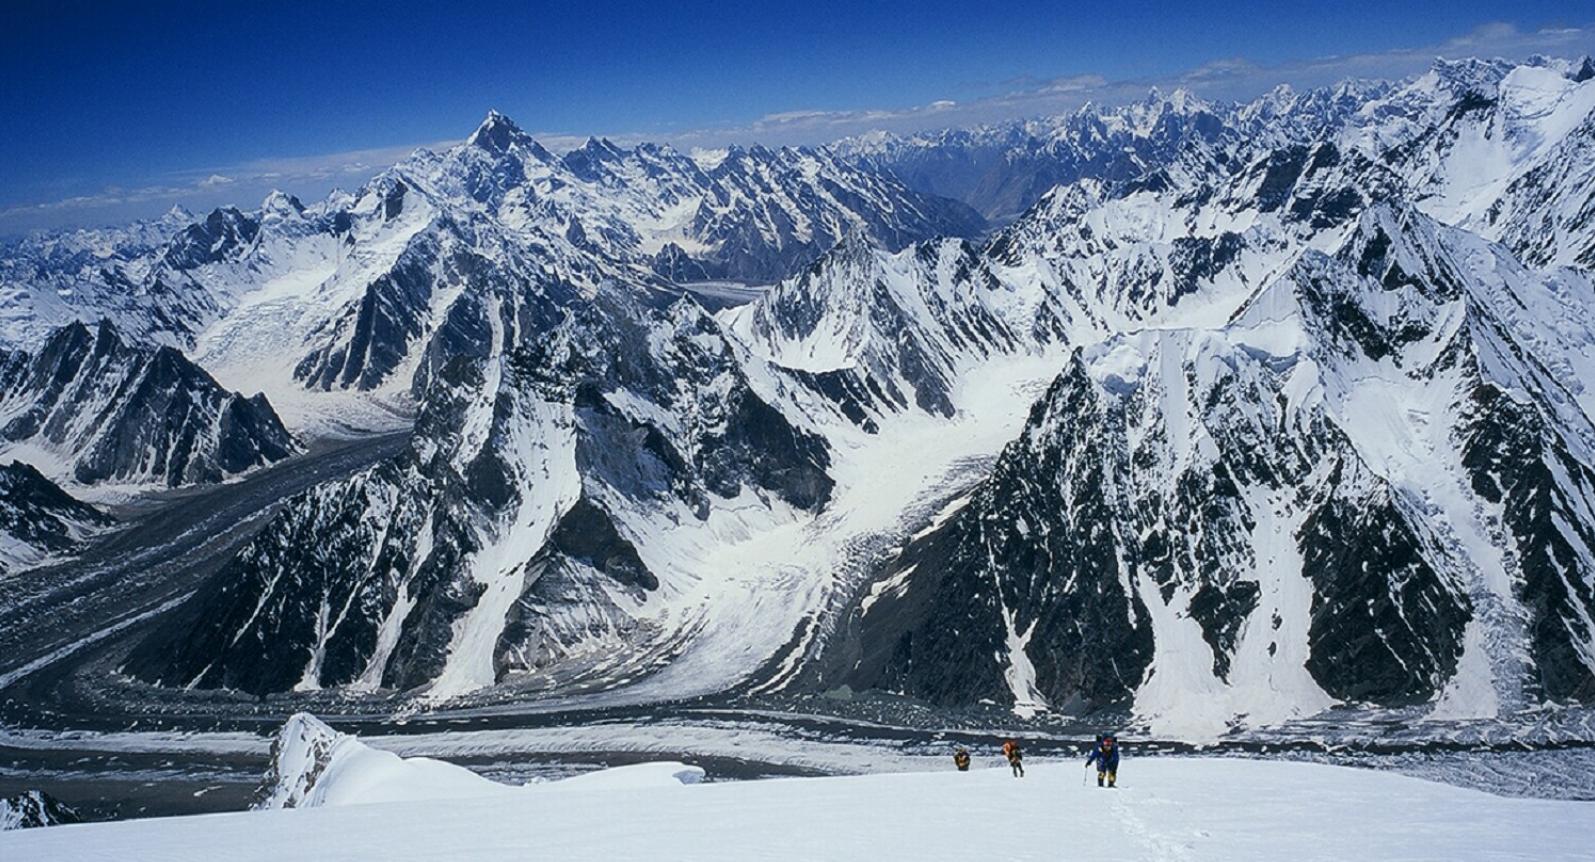 Broad Peak 8047m, Pakistan